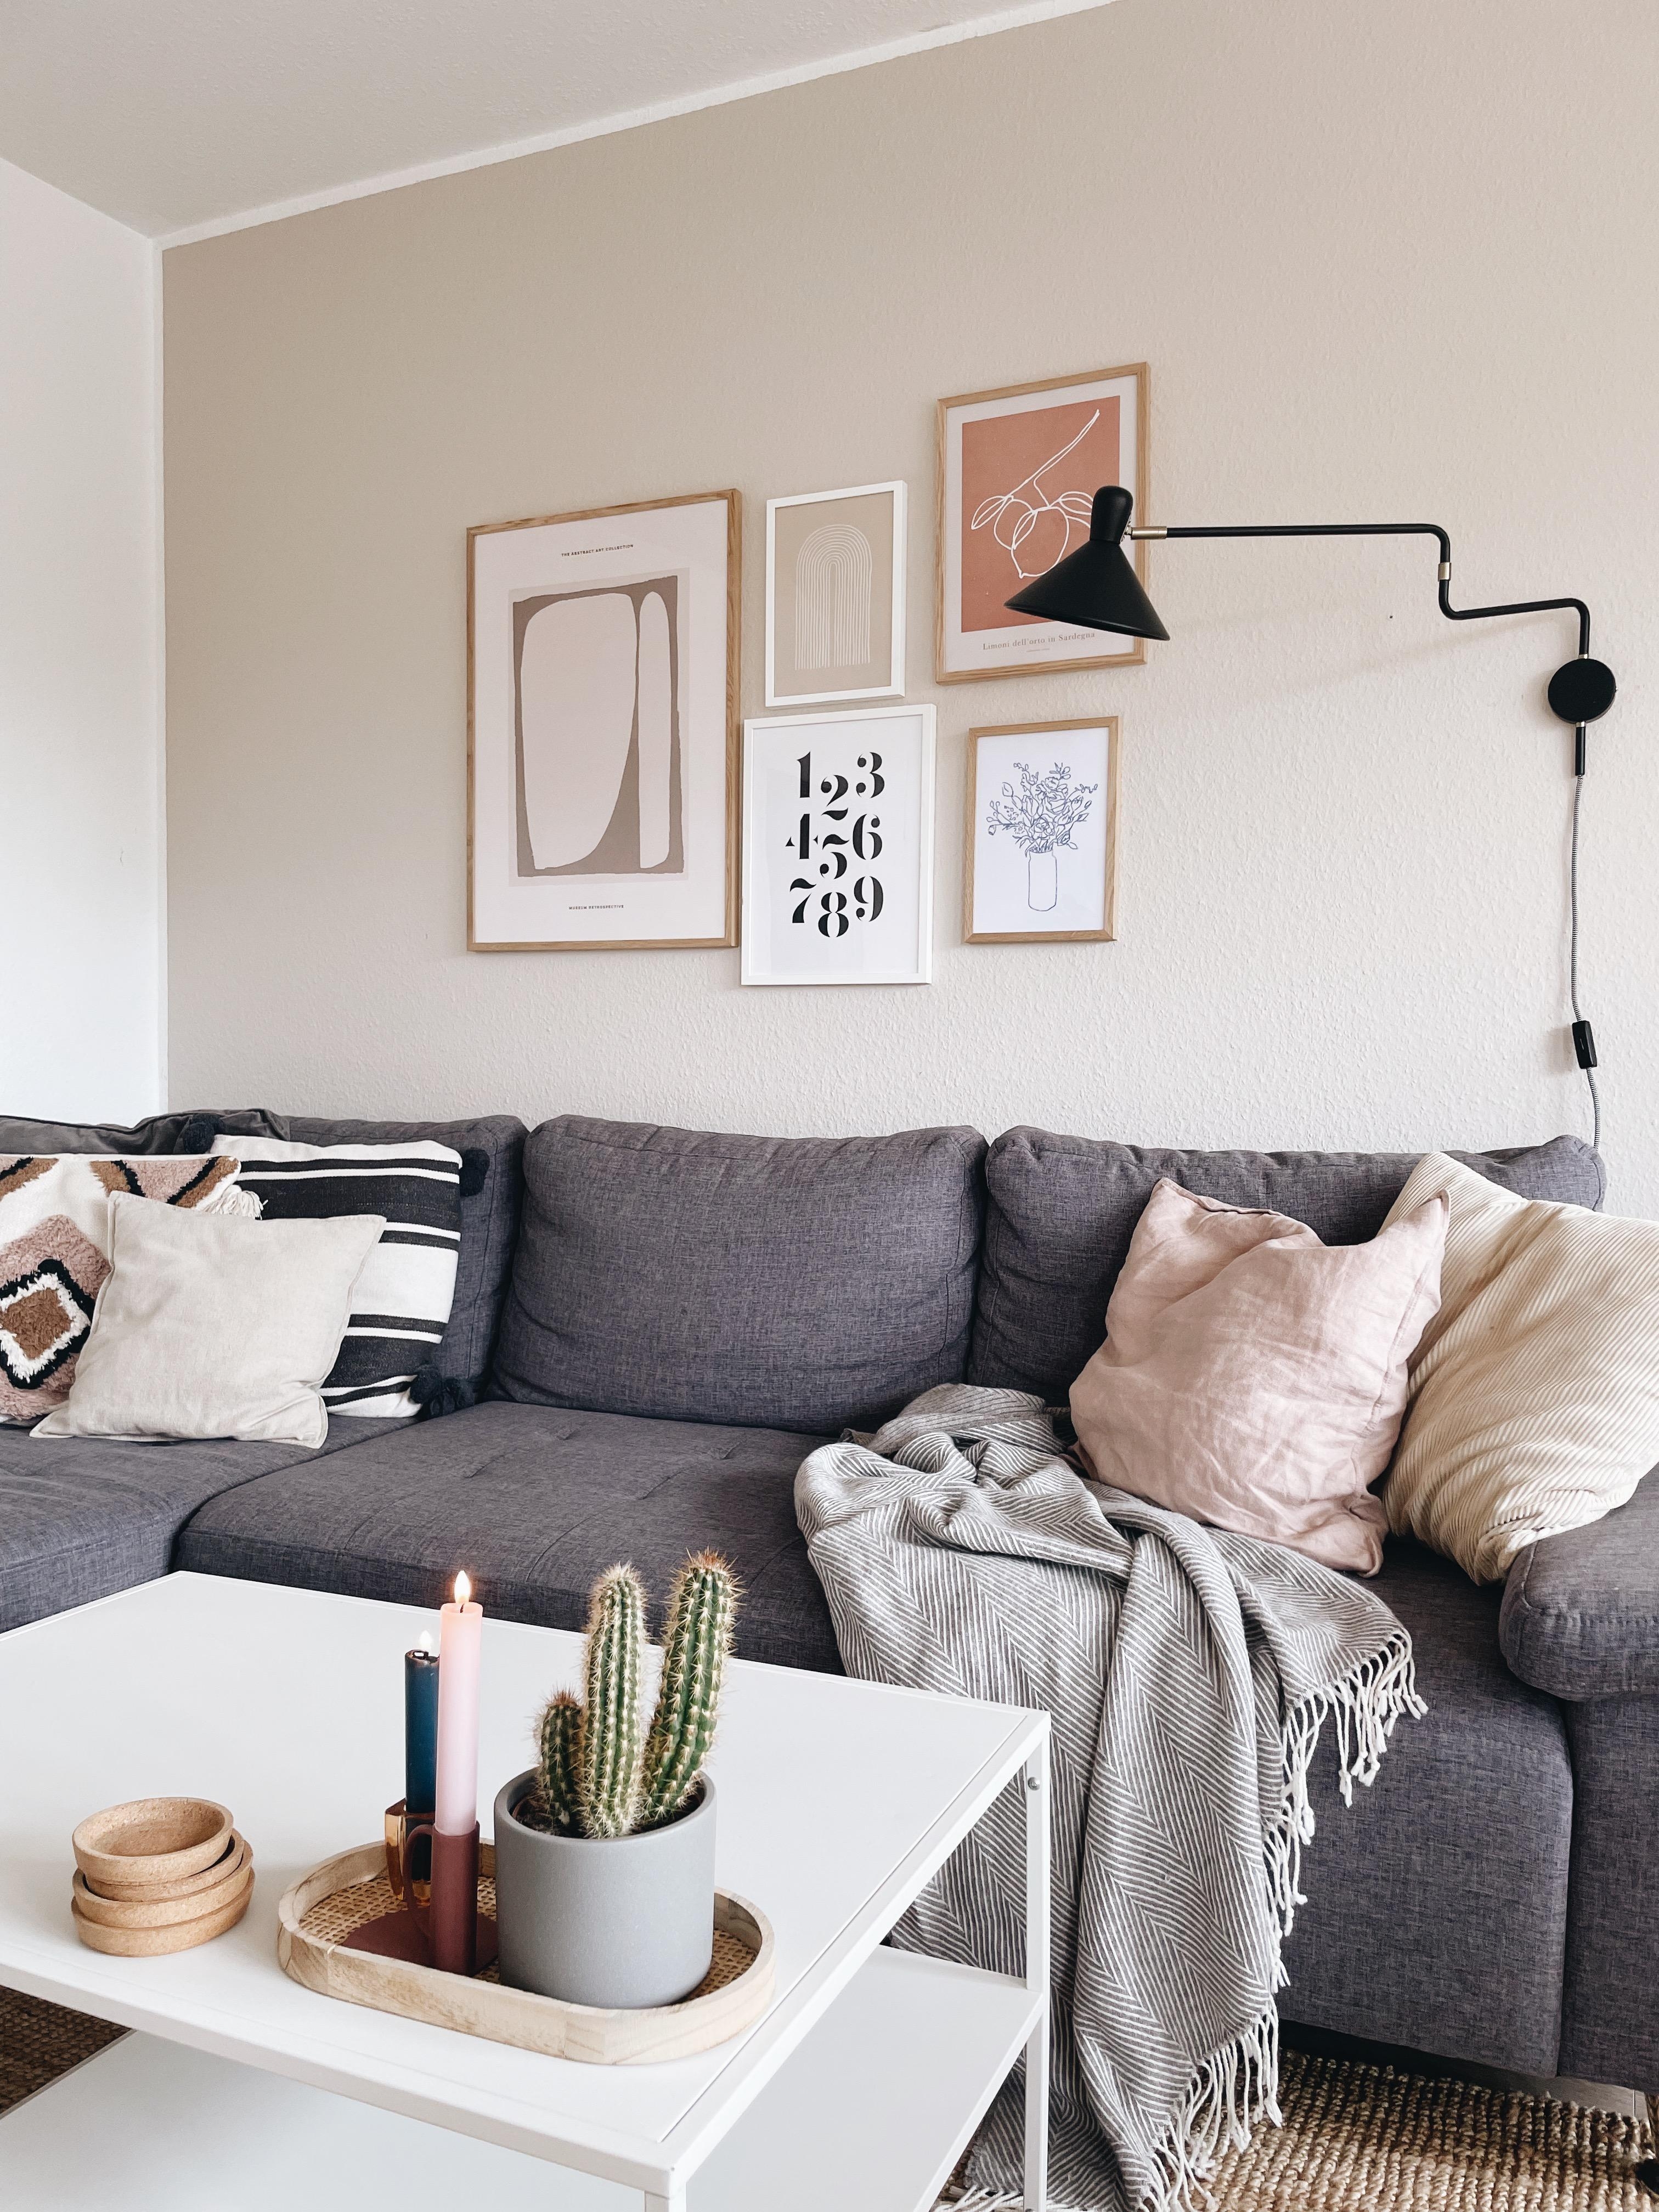 🧡 #Livingchallenge #Wohnzimmer #couchliebt #livingroom #hygge #couchstyle 